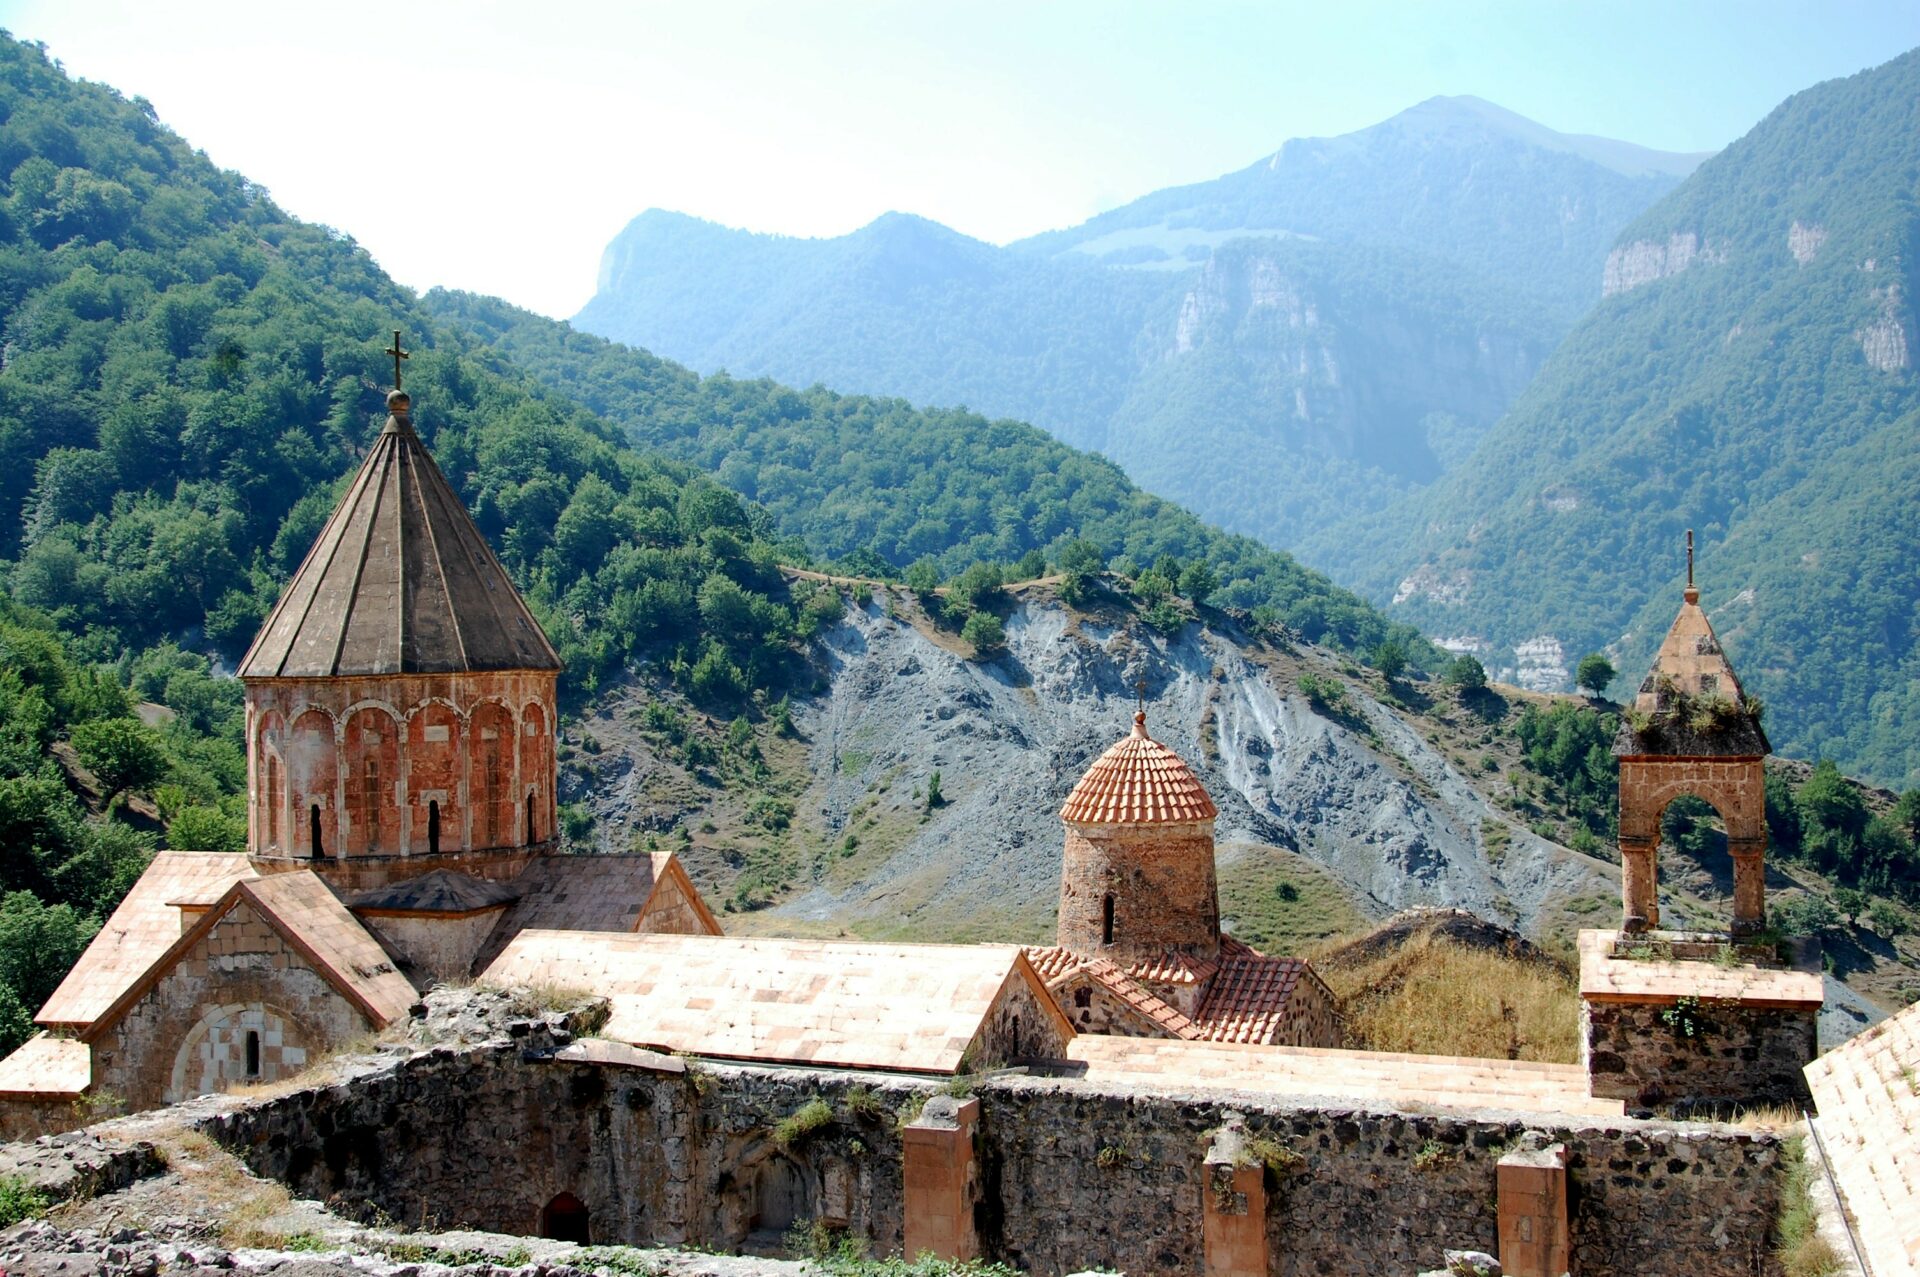 Les Arméniens évacuent le monastère de Dadivank, que les Azerbaïdjanais appellent un "temple albanais" © Jacques Berset